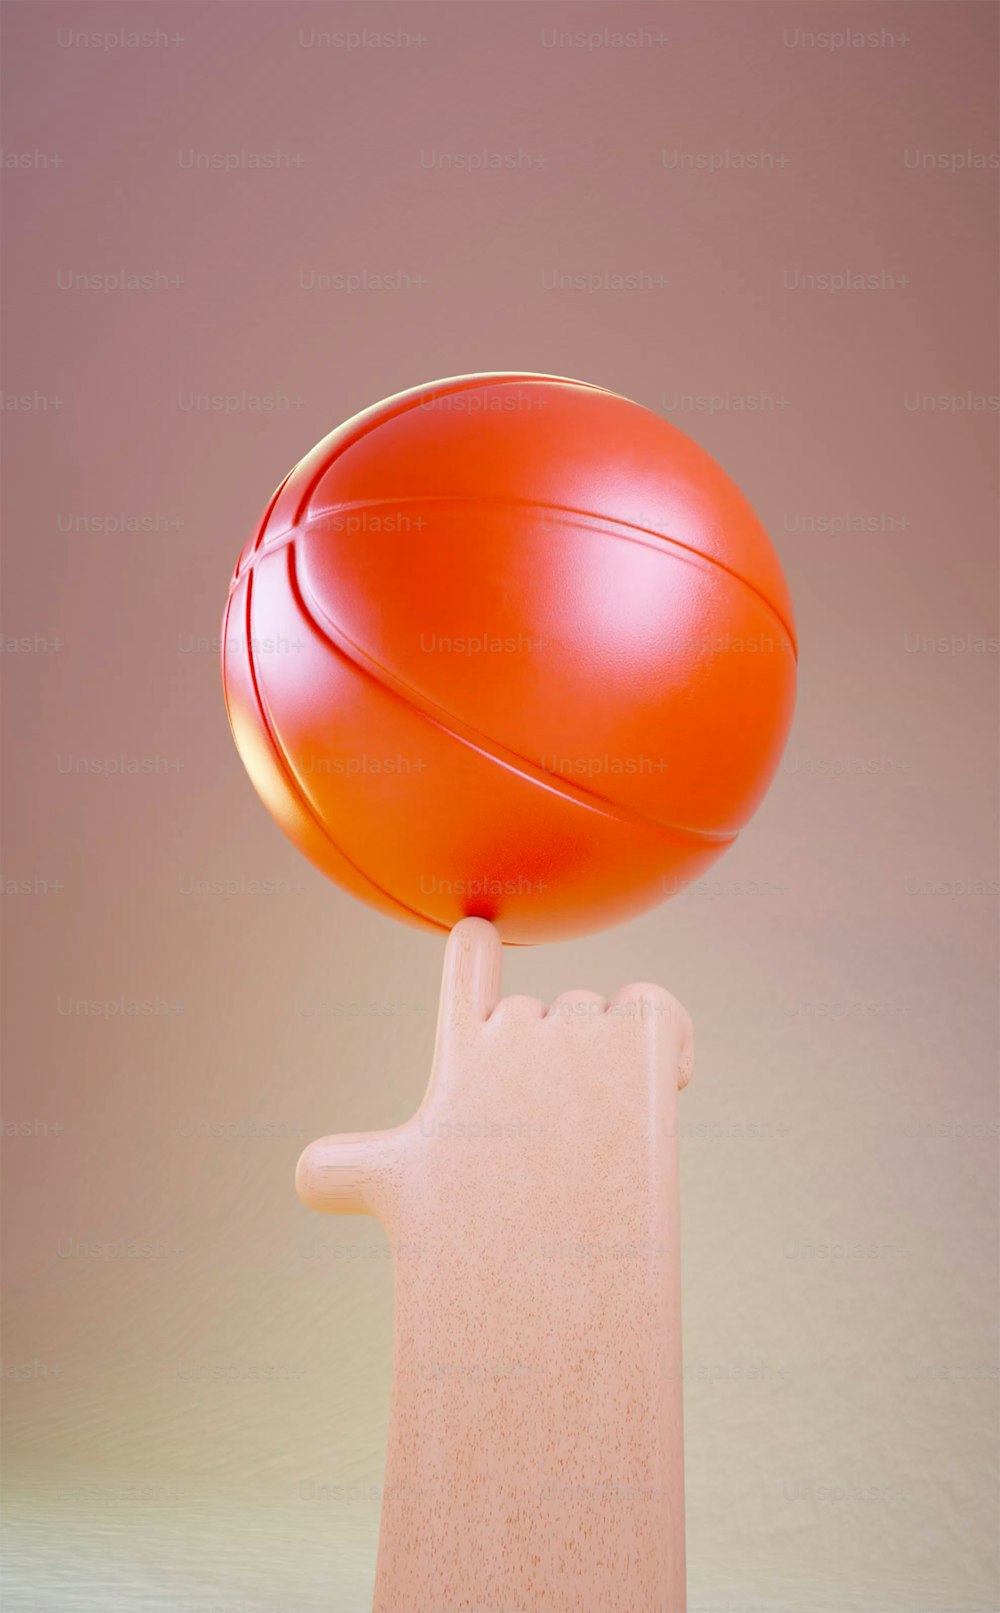 une boule rouge posée sur un objet rose